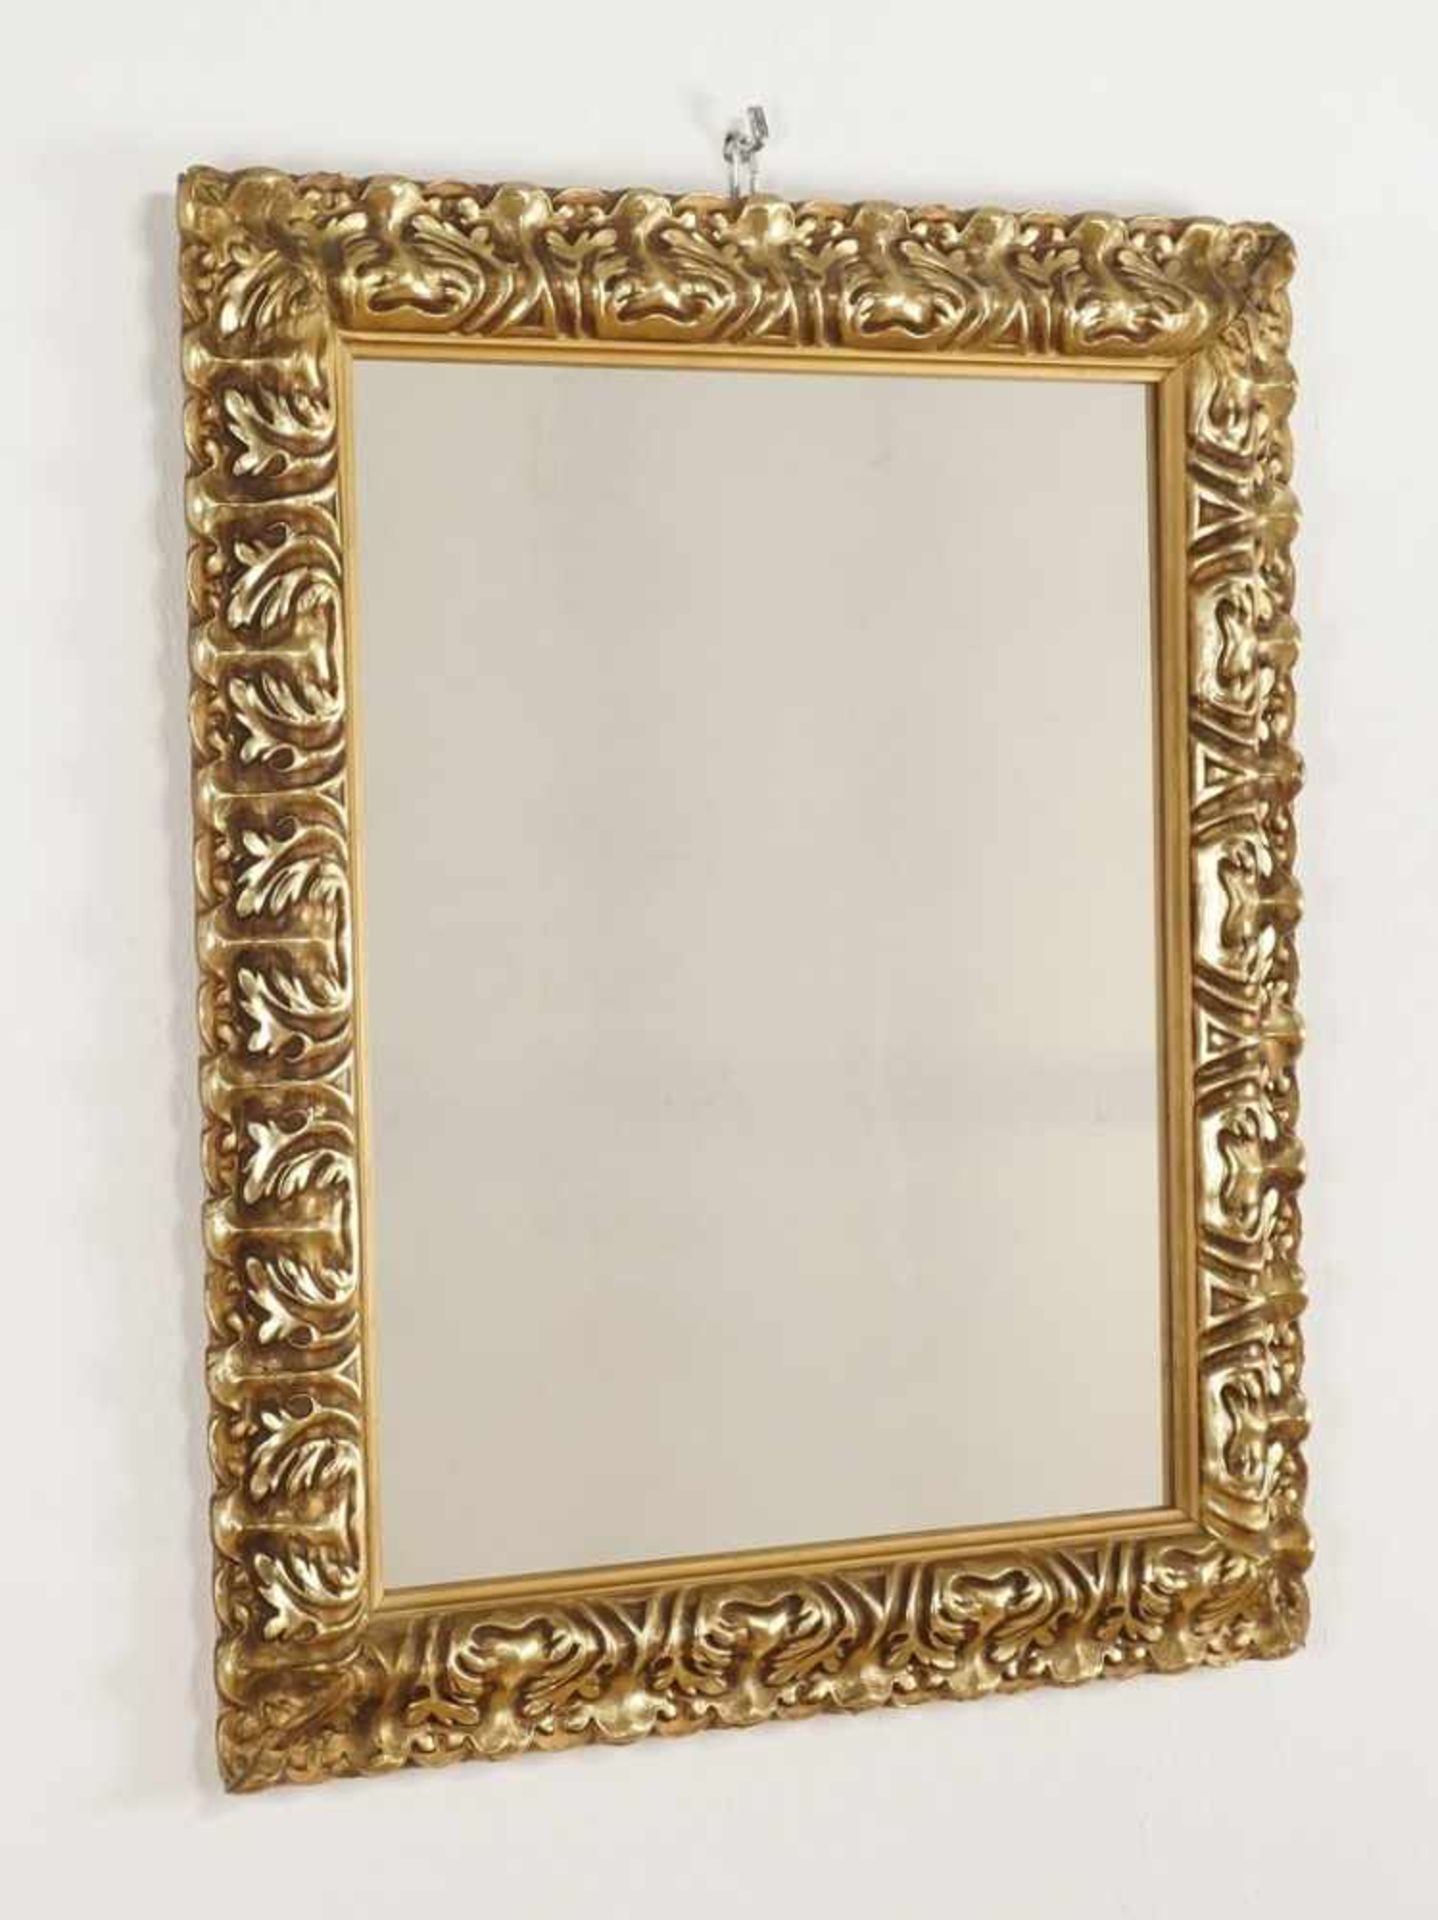 Spiegel im goldfarbenen Rahmen